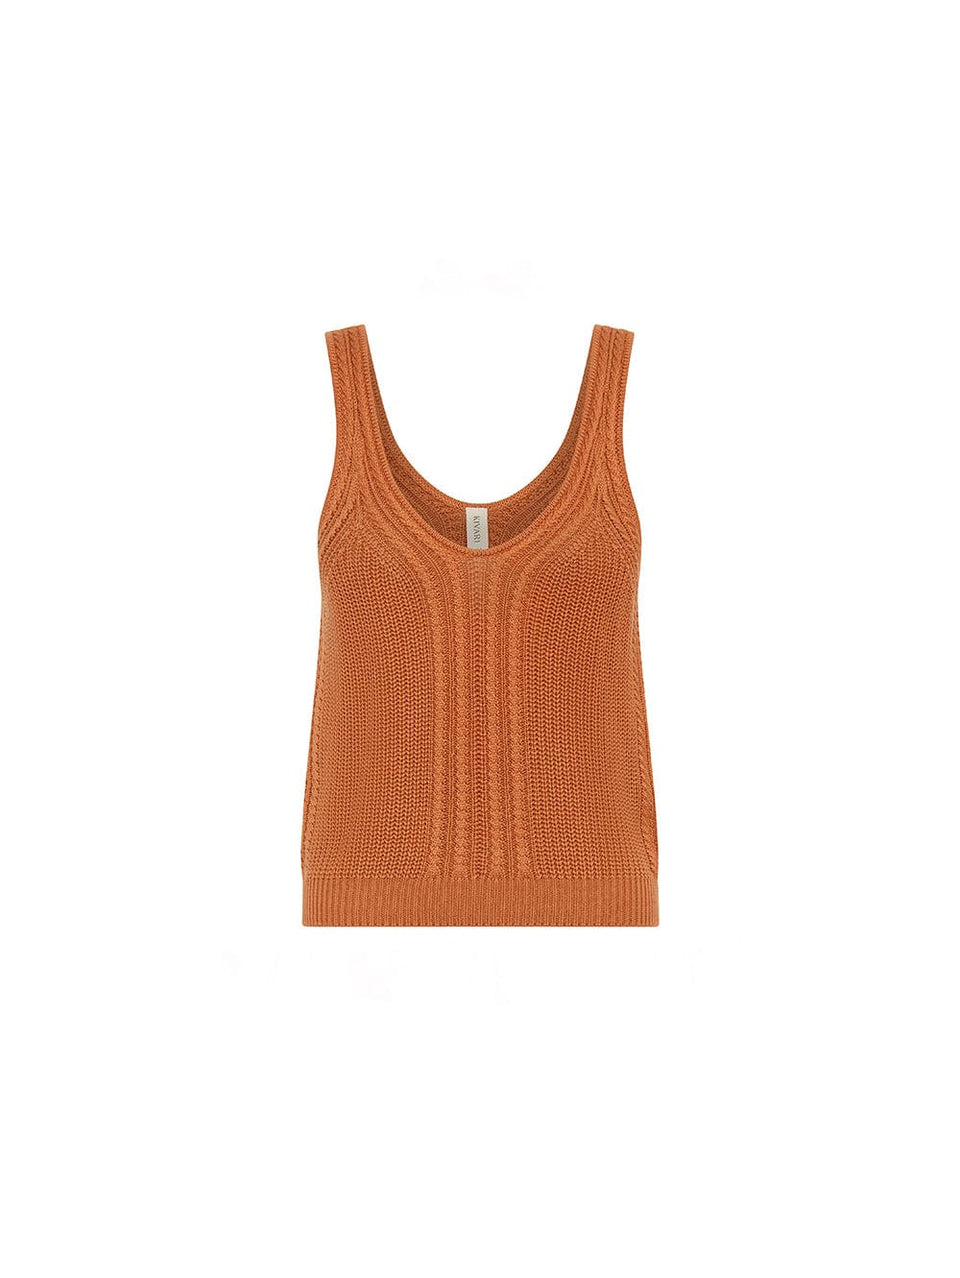 Raven Knit Cami Ginger KIVARI | Orange knit tank top